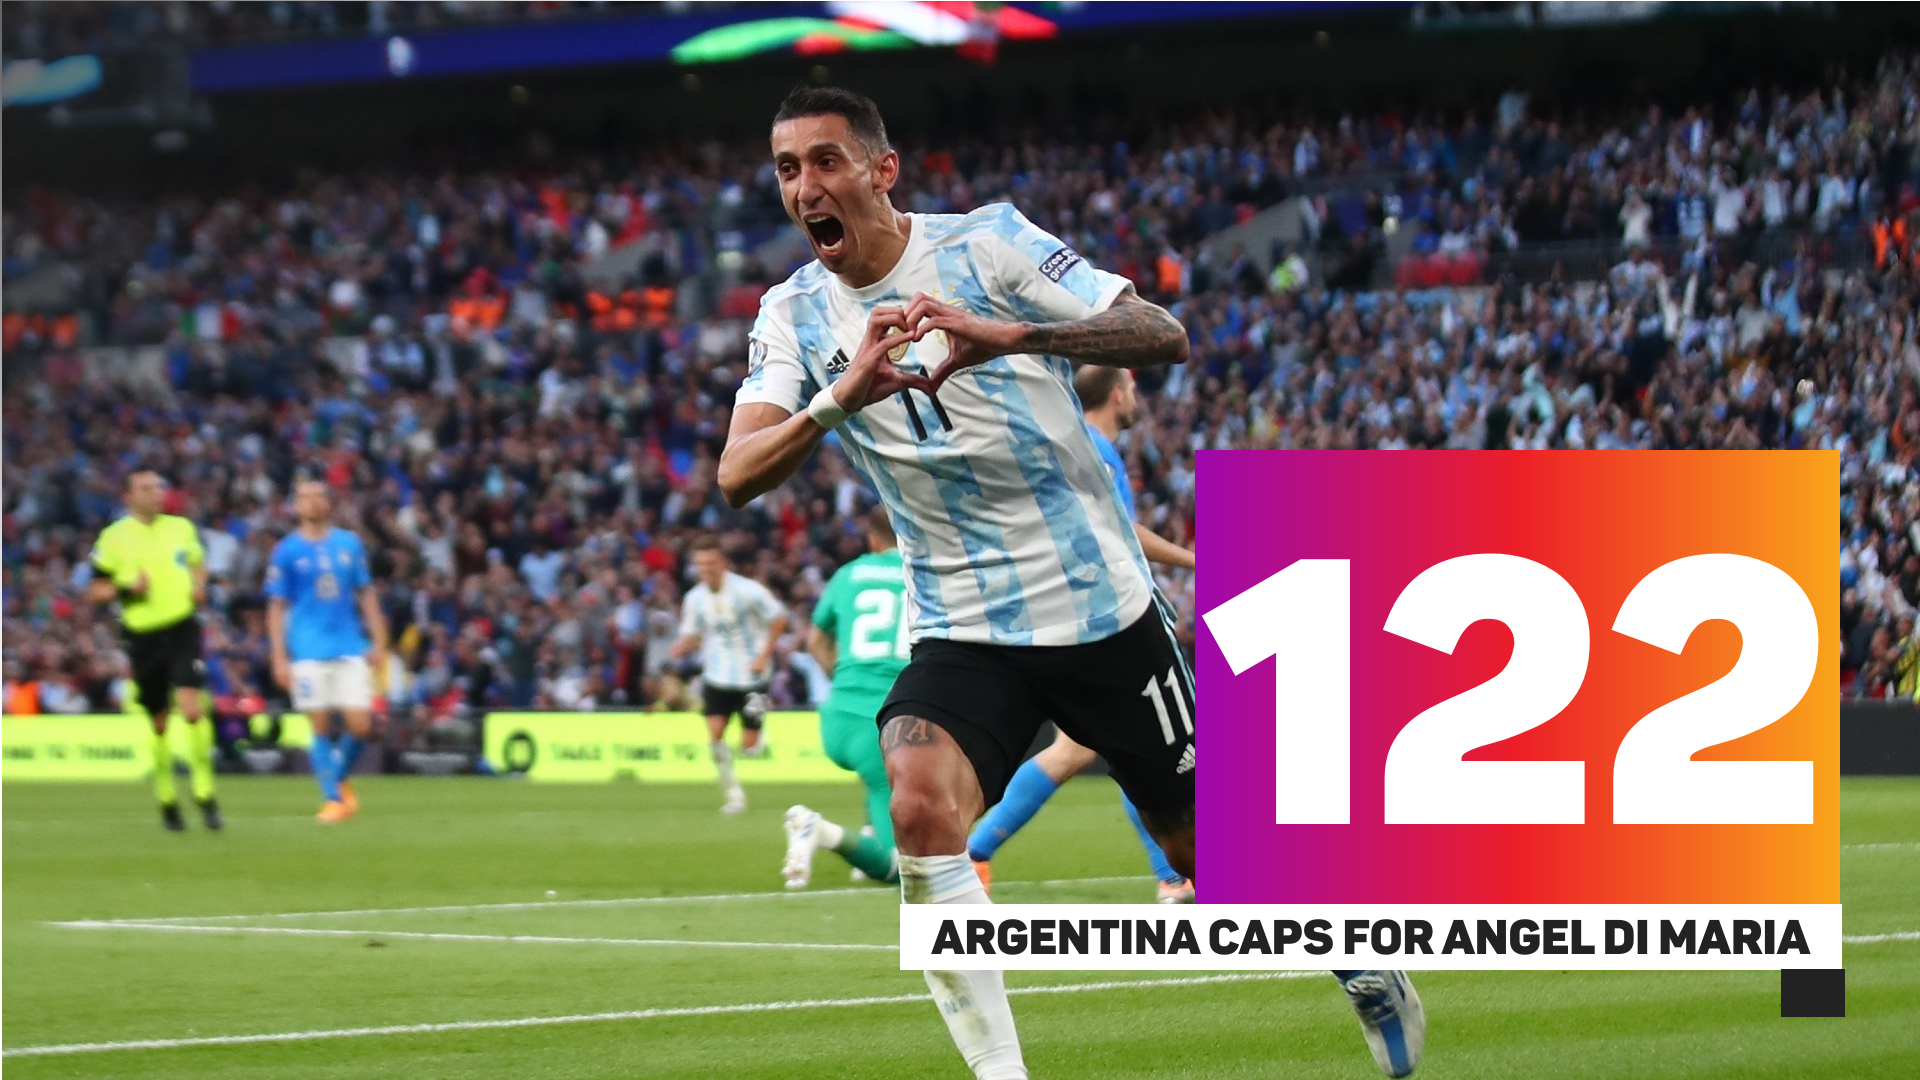 Angel Di Maria has 122 Argentina caps